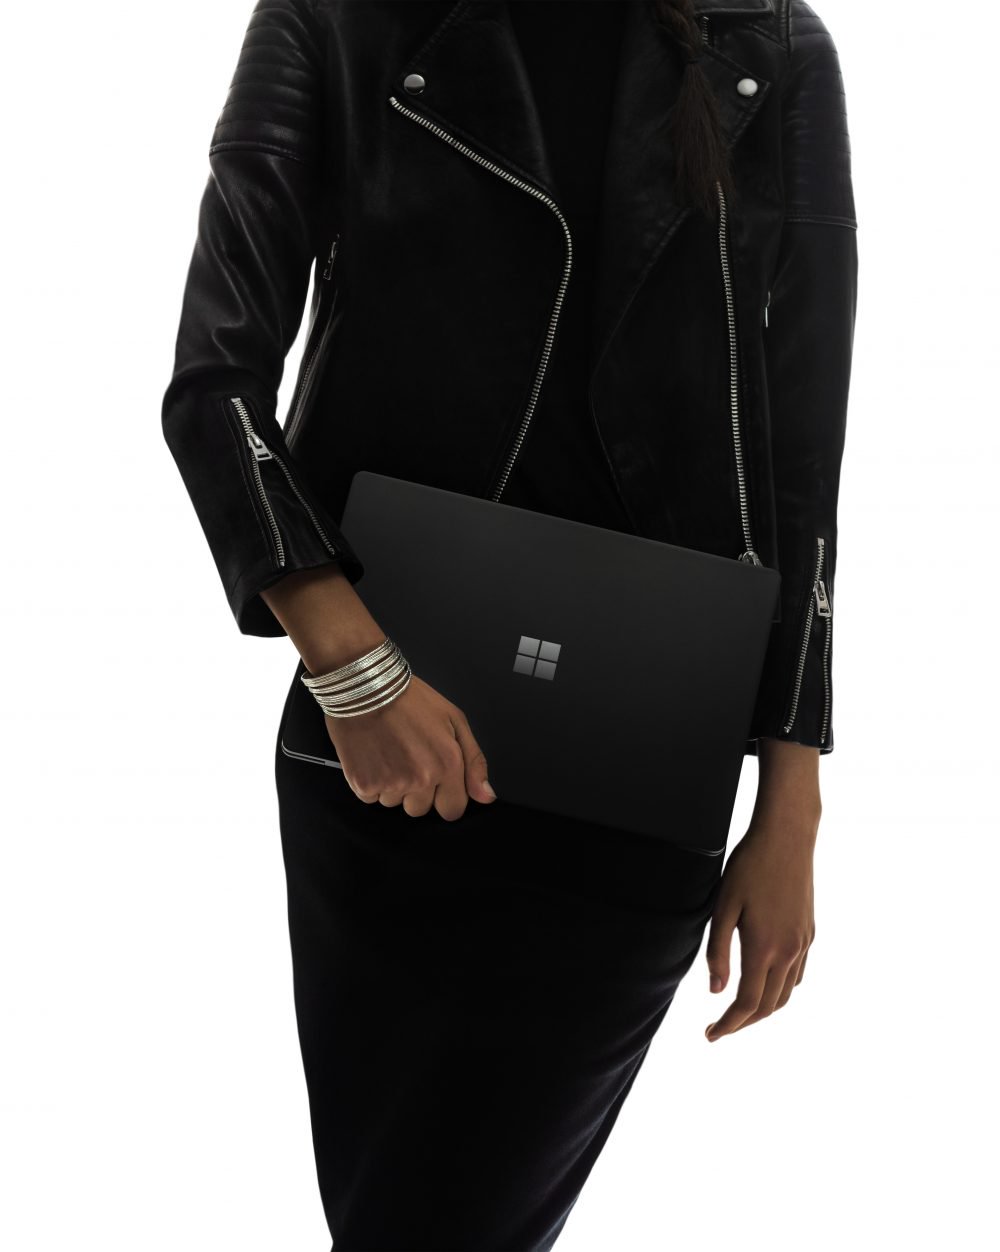 Побалувати себе! Microsoft Surface Laptop 2 тепер має величезну знижку в 300 доларів